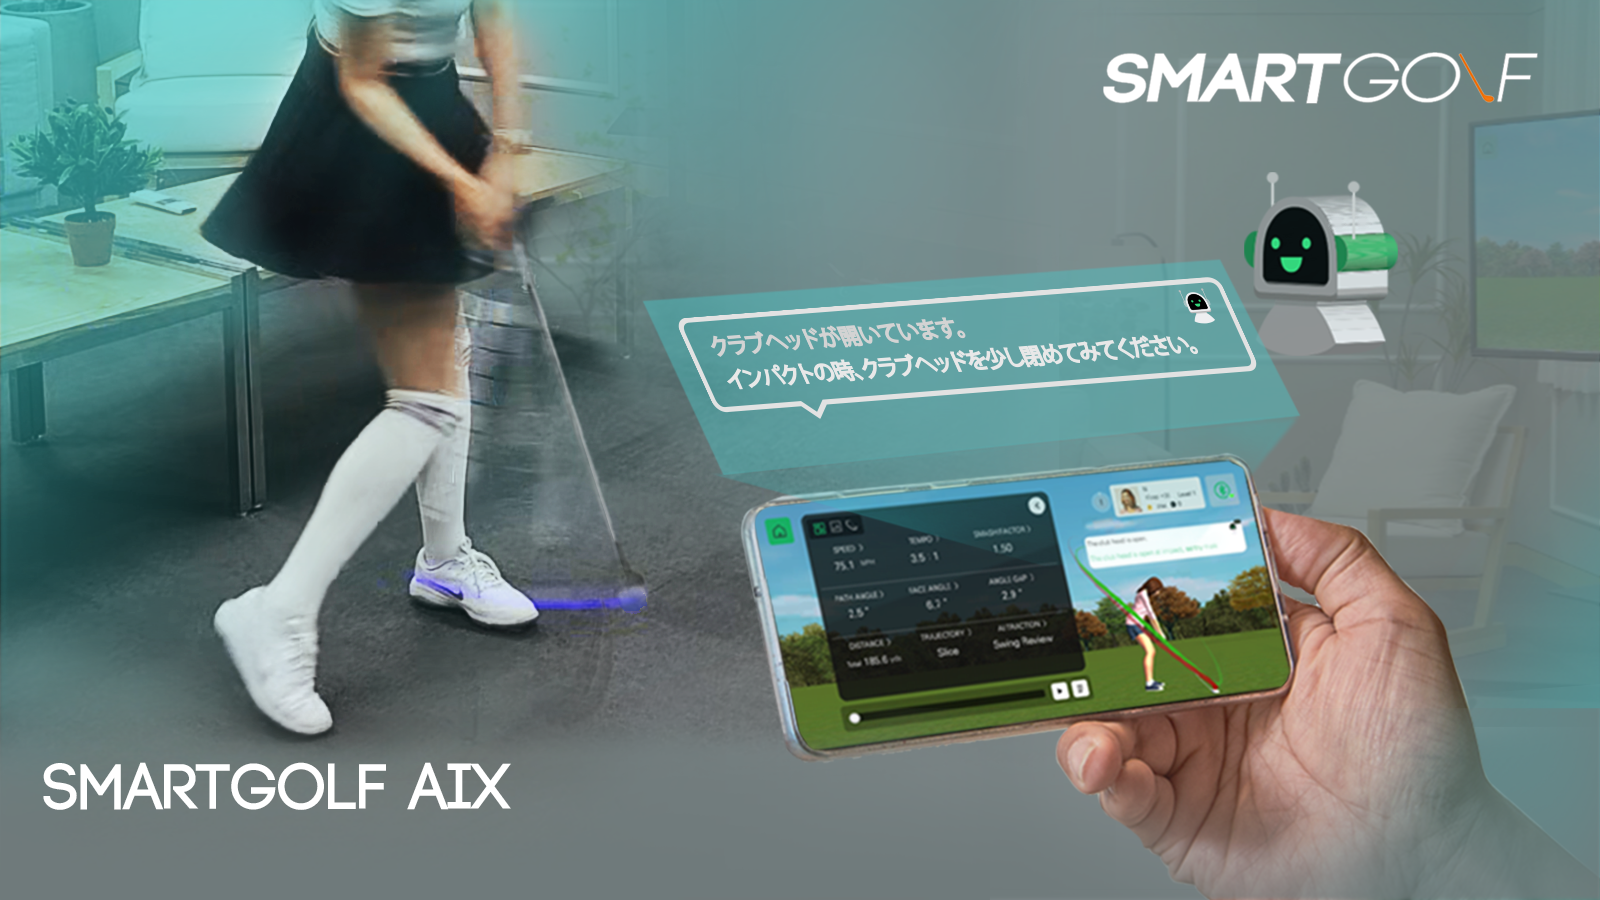 ゴルフにおける人工知能スイング練習器具「スマートゴルフ AIX